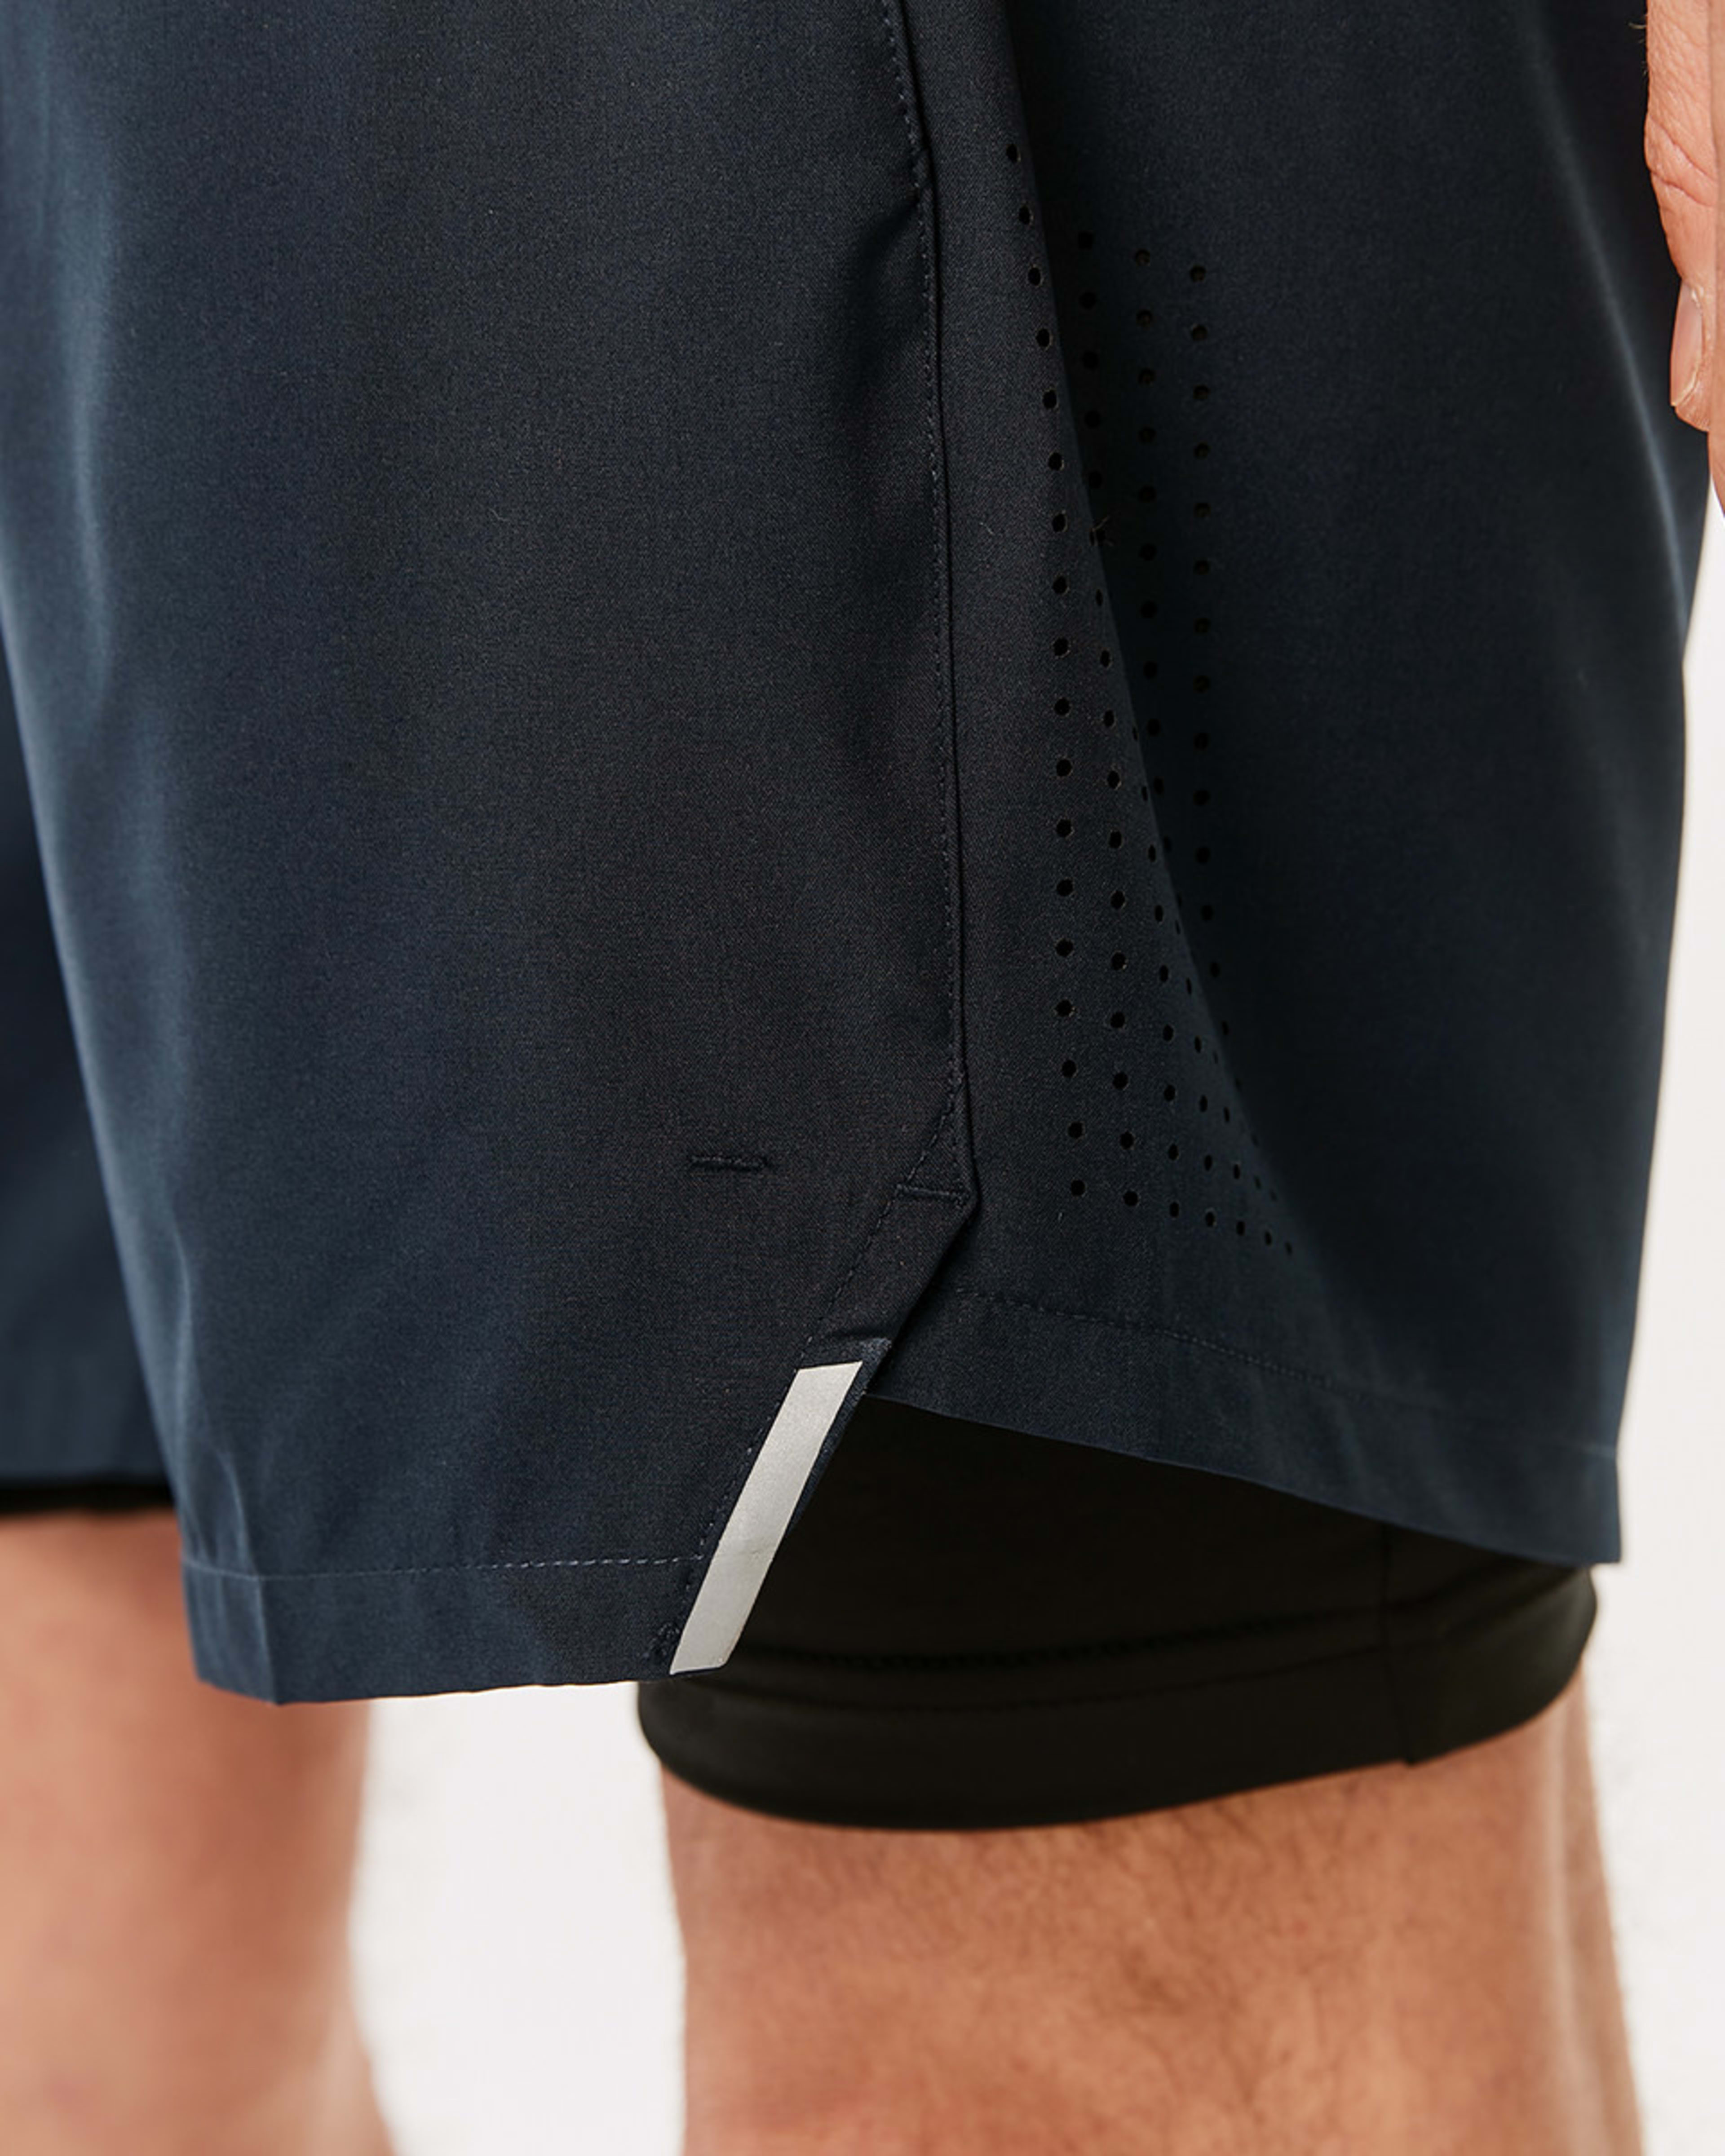 Active Mens Dual Layer Shorts - Kmart